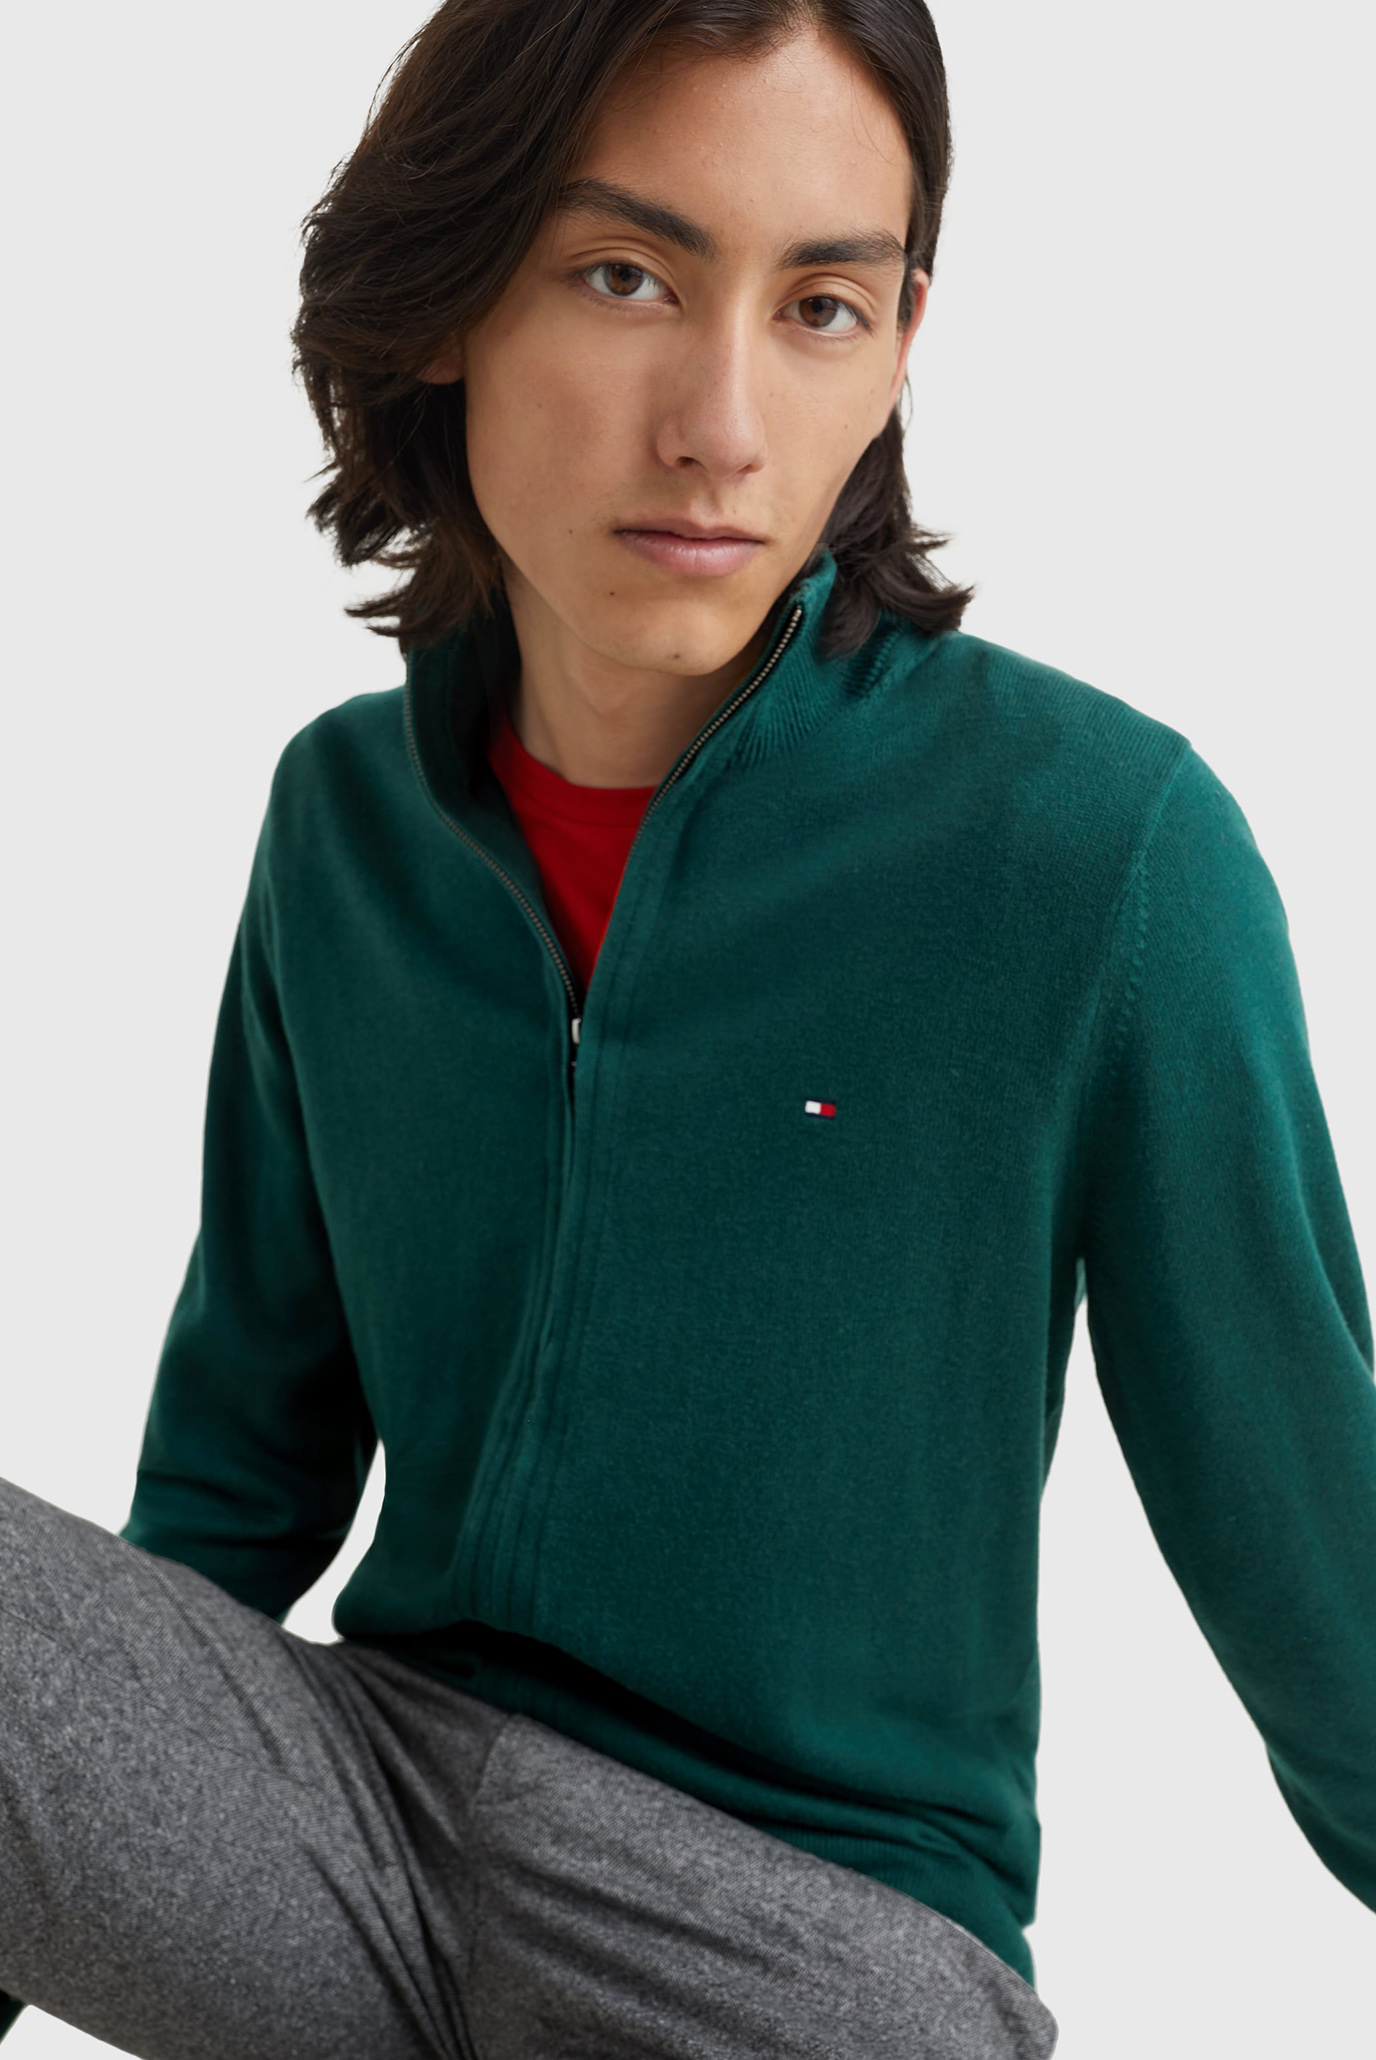 Мужская зеленая кофта Tommy Hilfiger MW0MW28050 — MD-Fashion